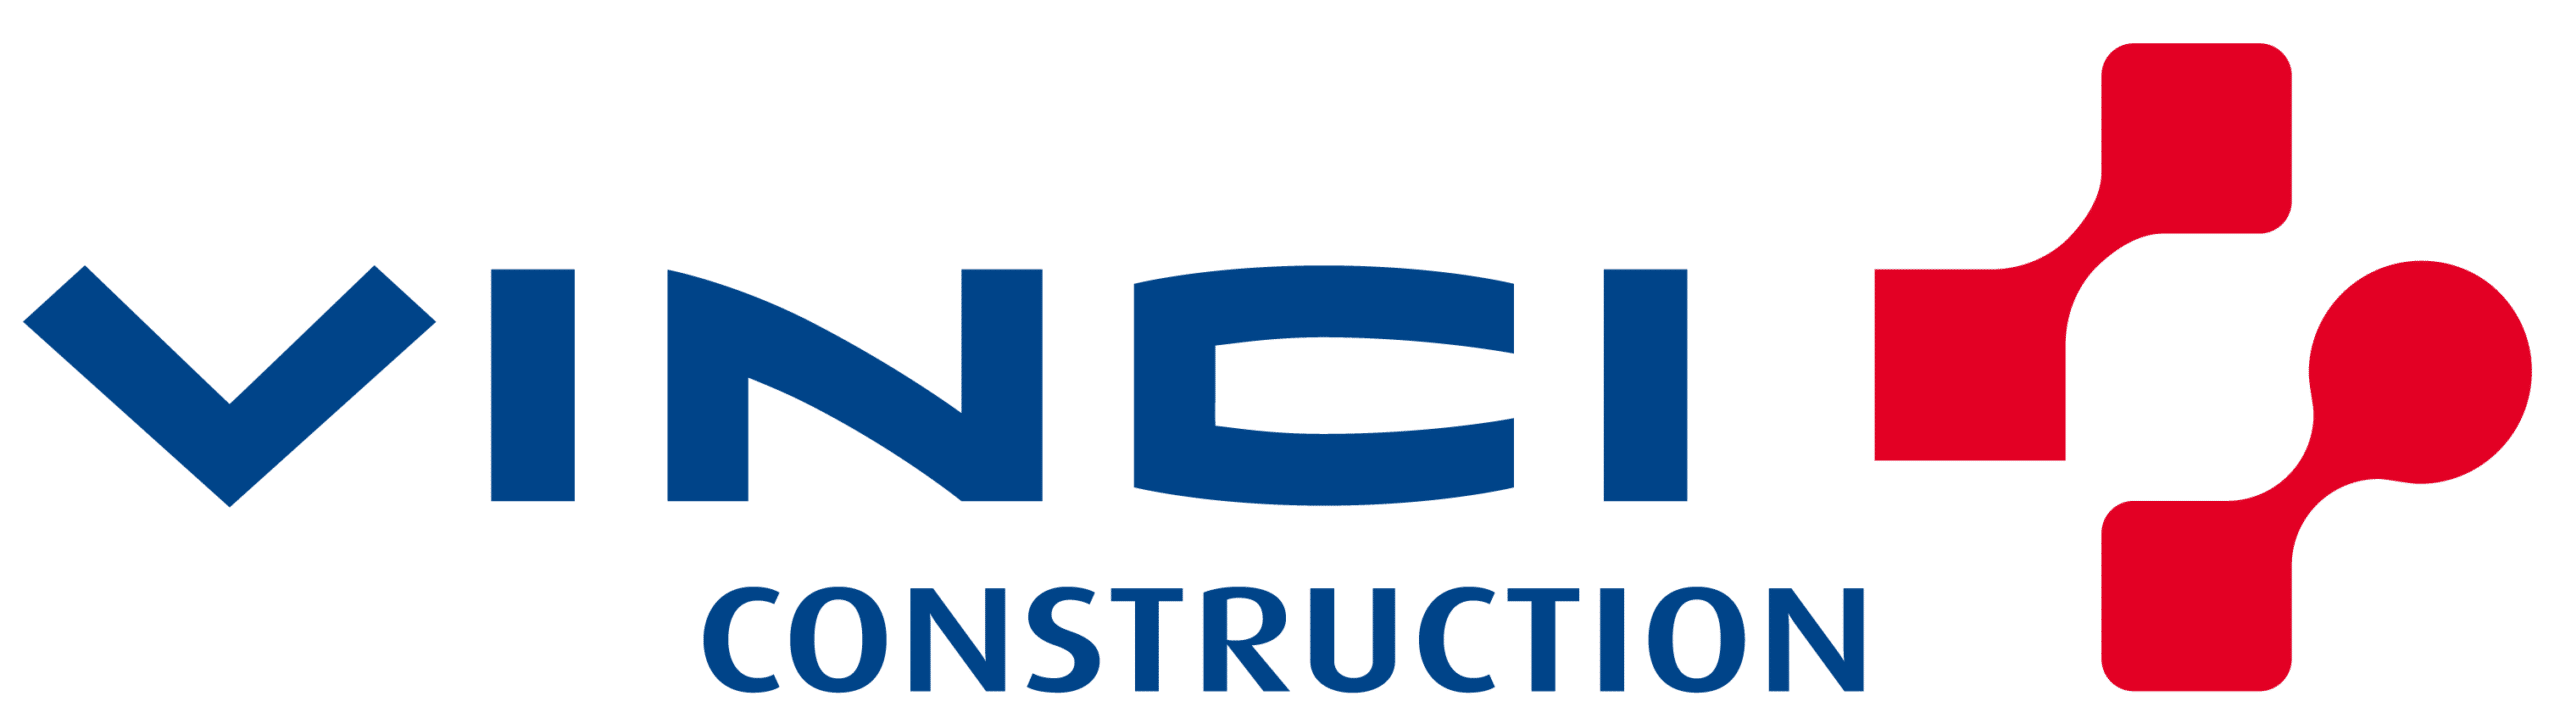 vinci-construction-1.png